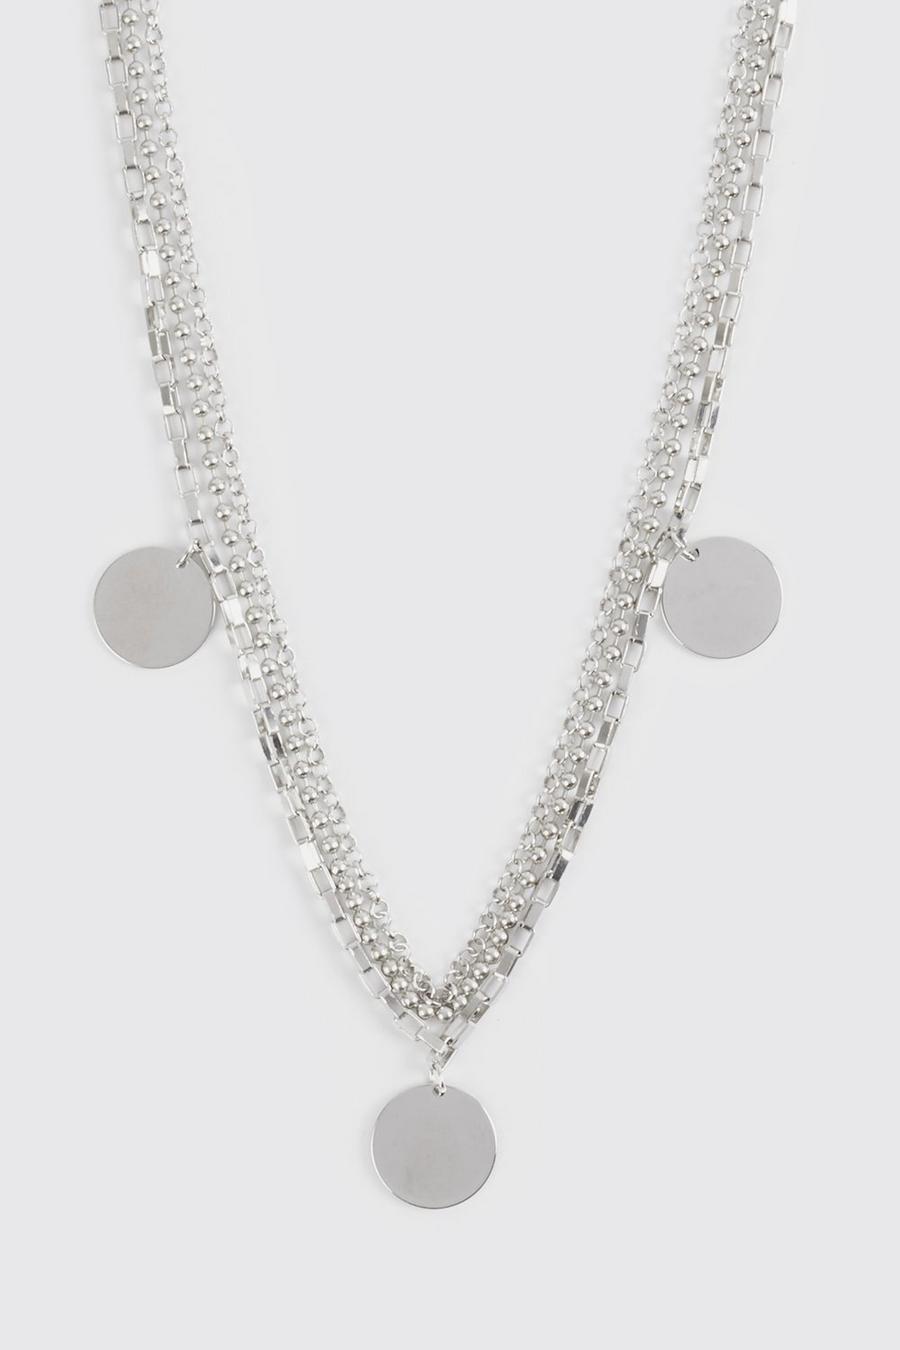 Silver Multi Layer Pendant Necklace